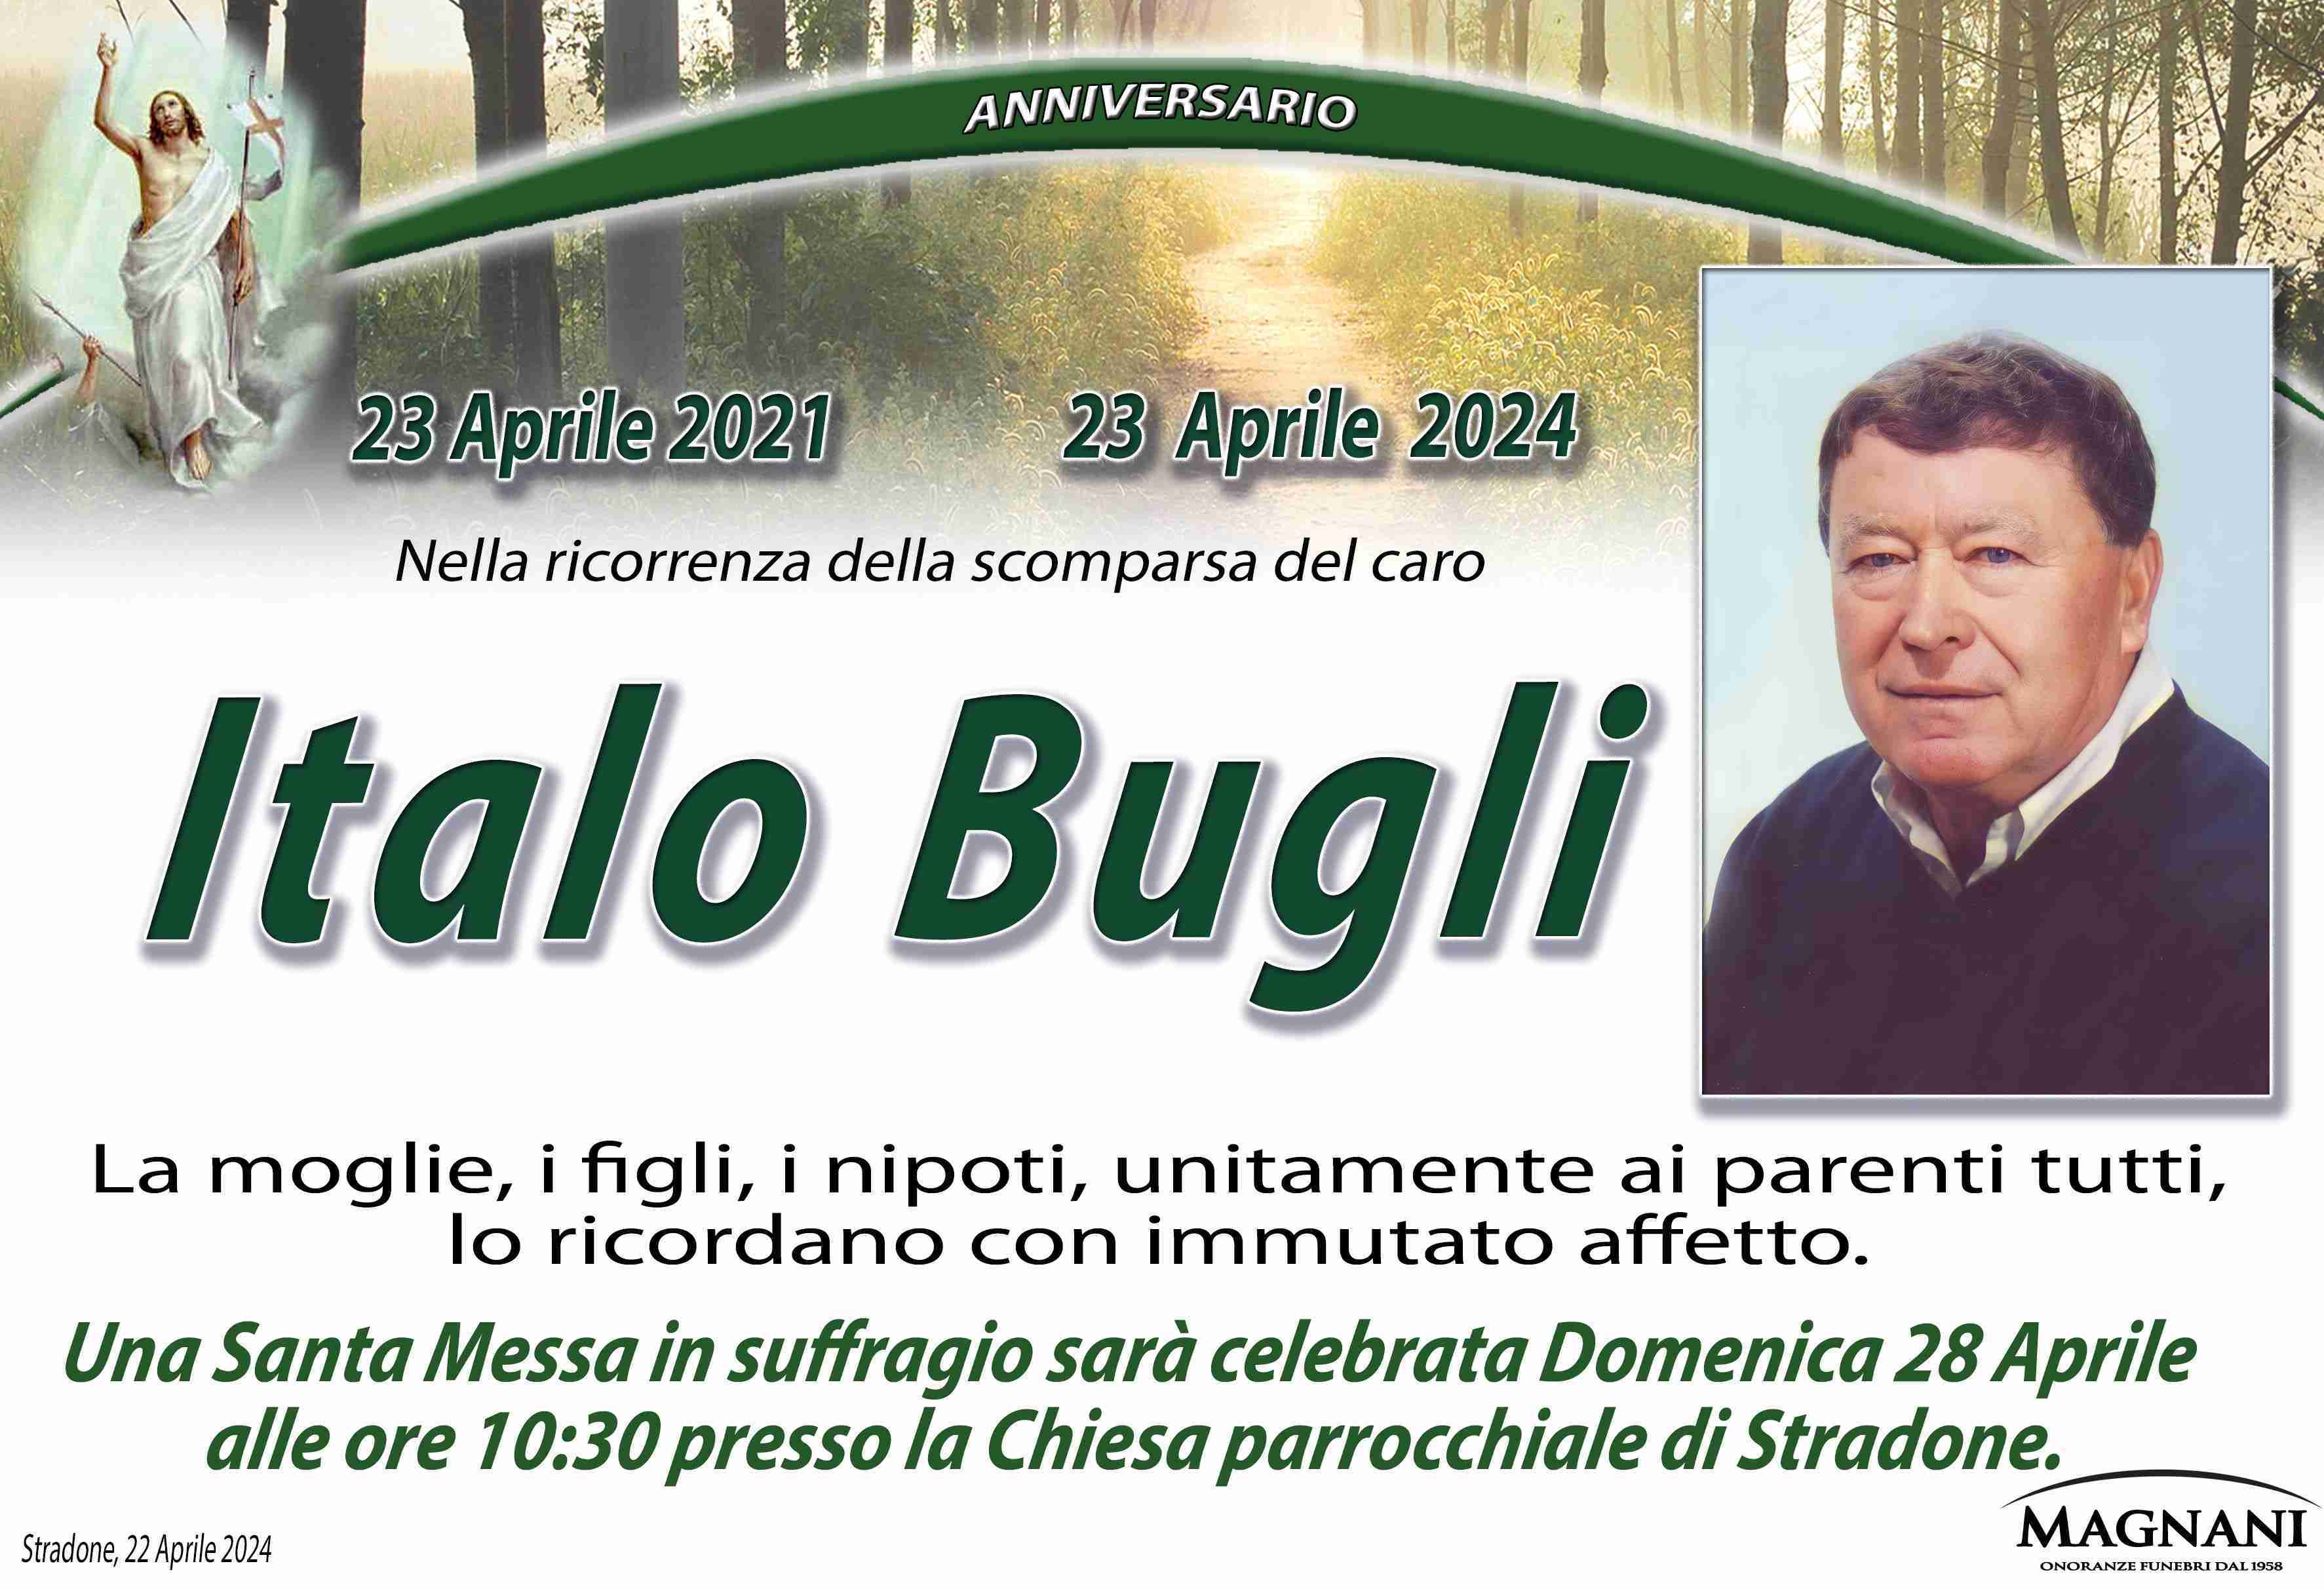 Italo Bugli